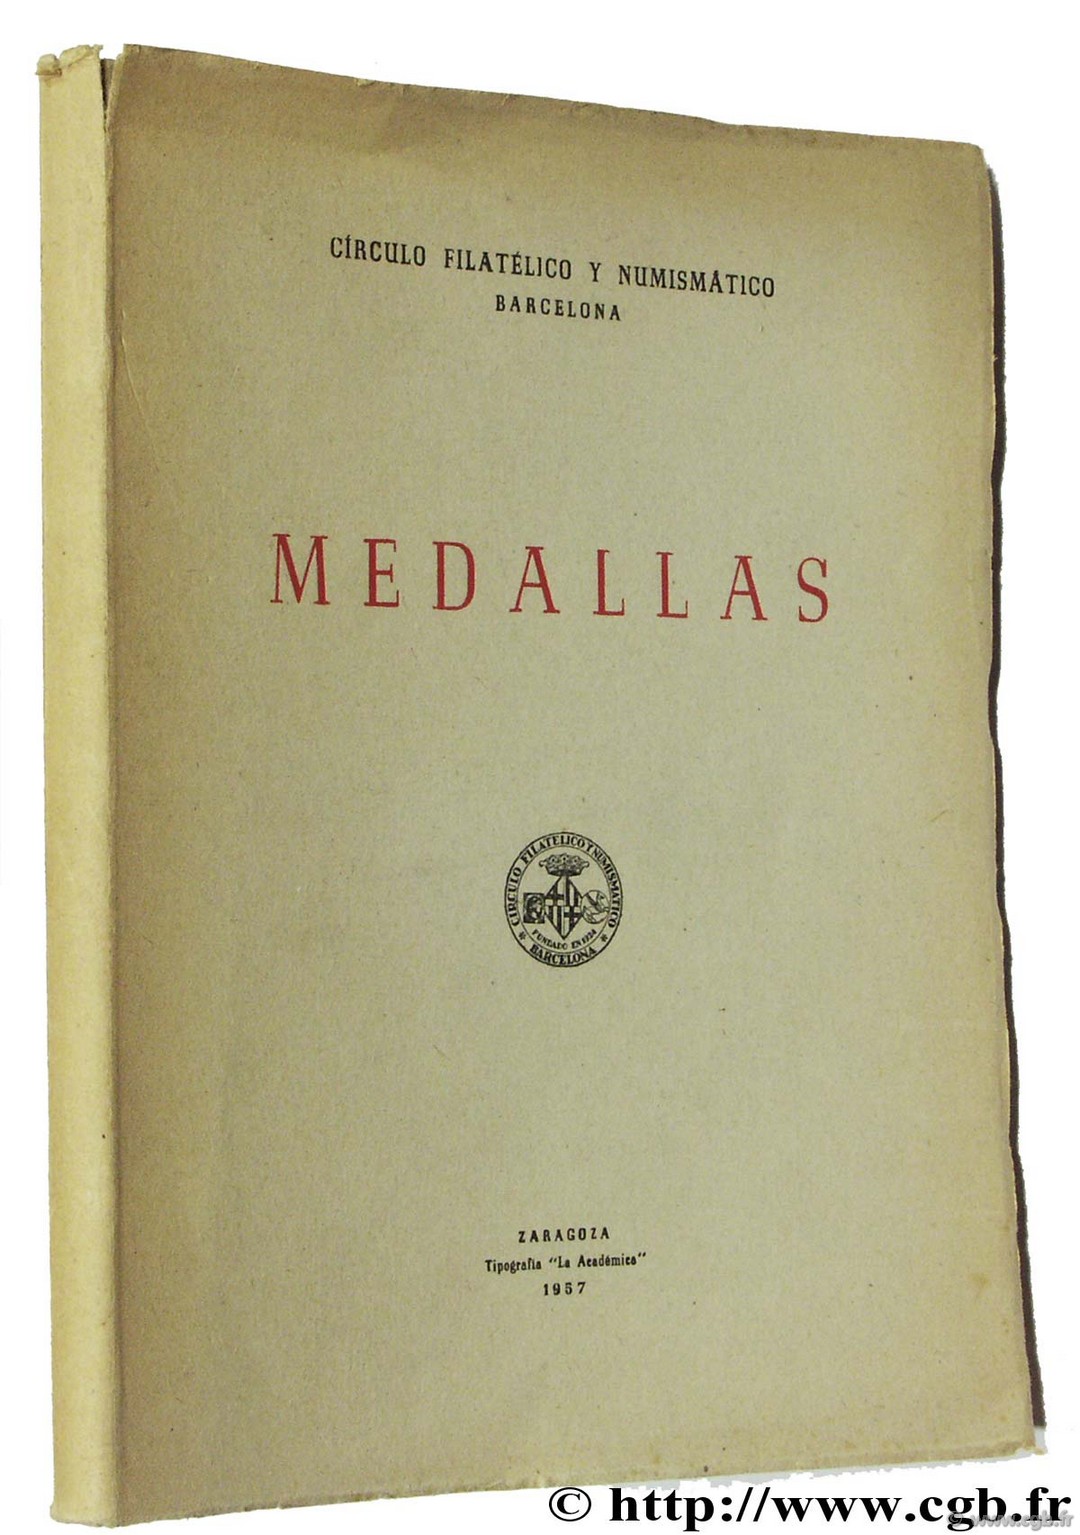 Medallas, Circulo Filatelico y Numismatico Barcelona 